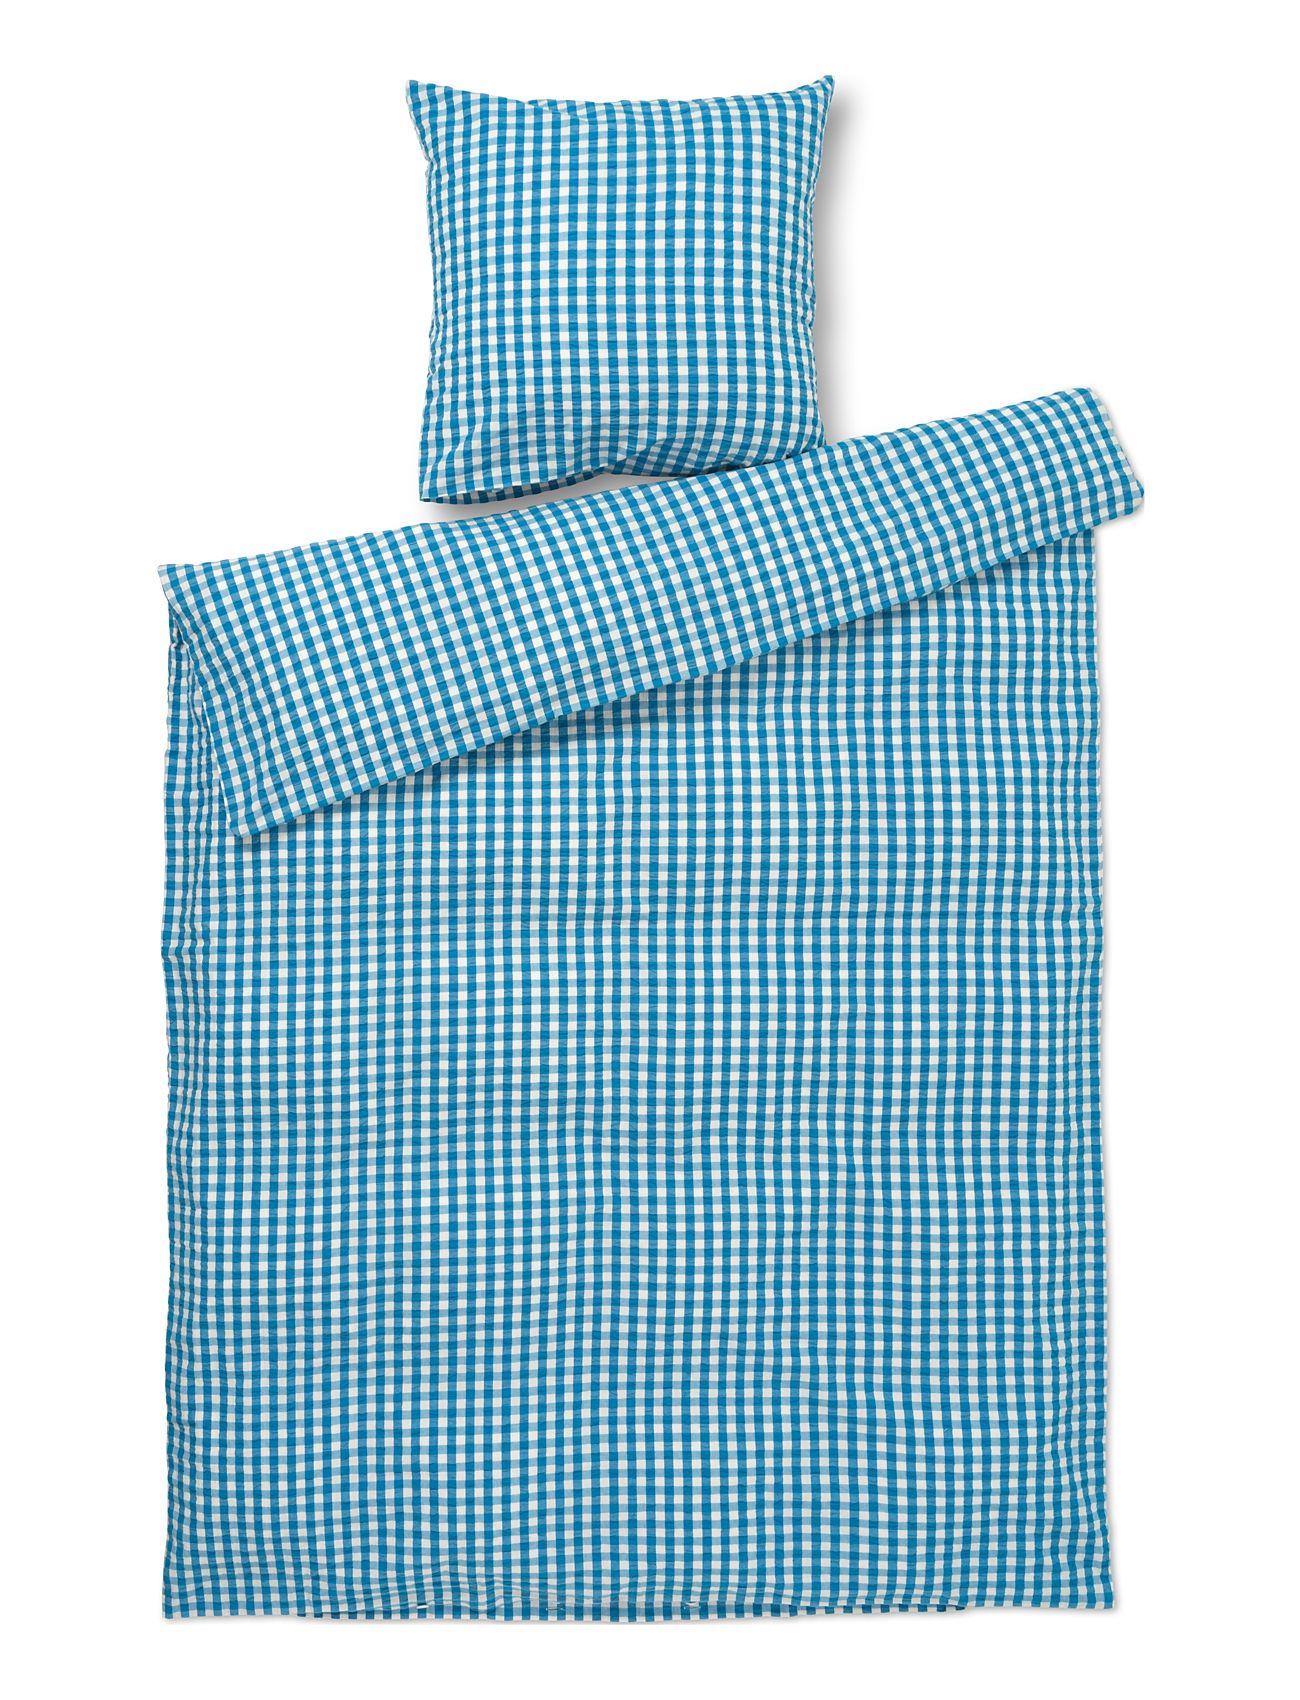 Bæk&Bølge Sengetøj 140X220 Cm Dk Home Textiles Bedtextiles Bed Sets Blue Juna